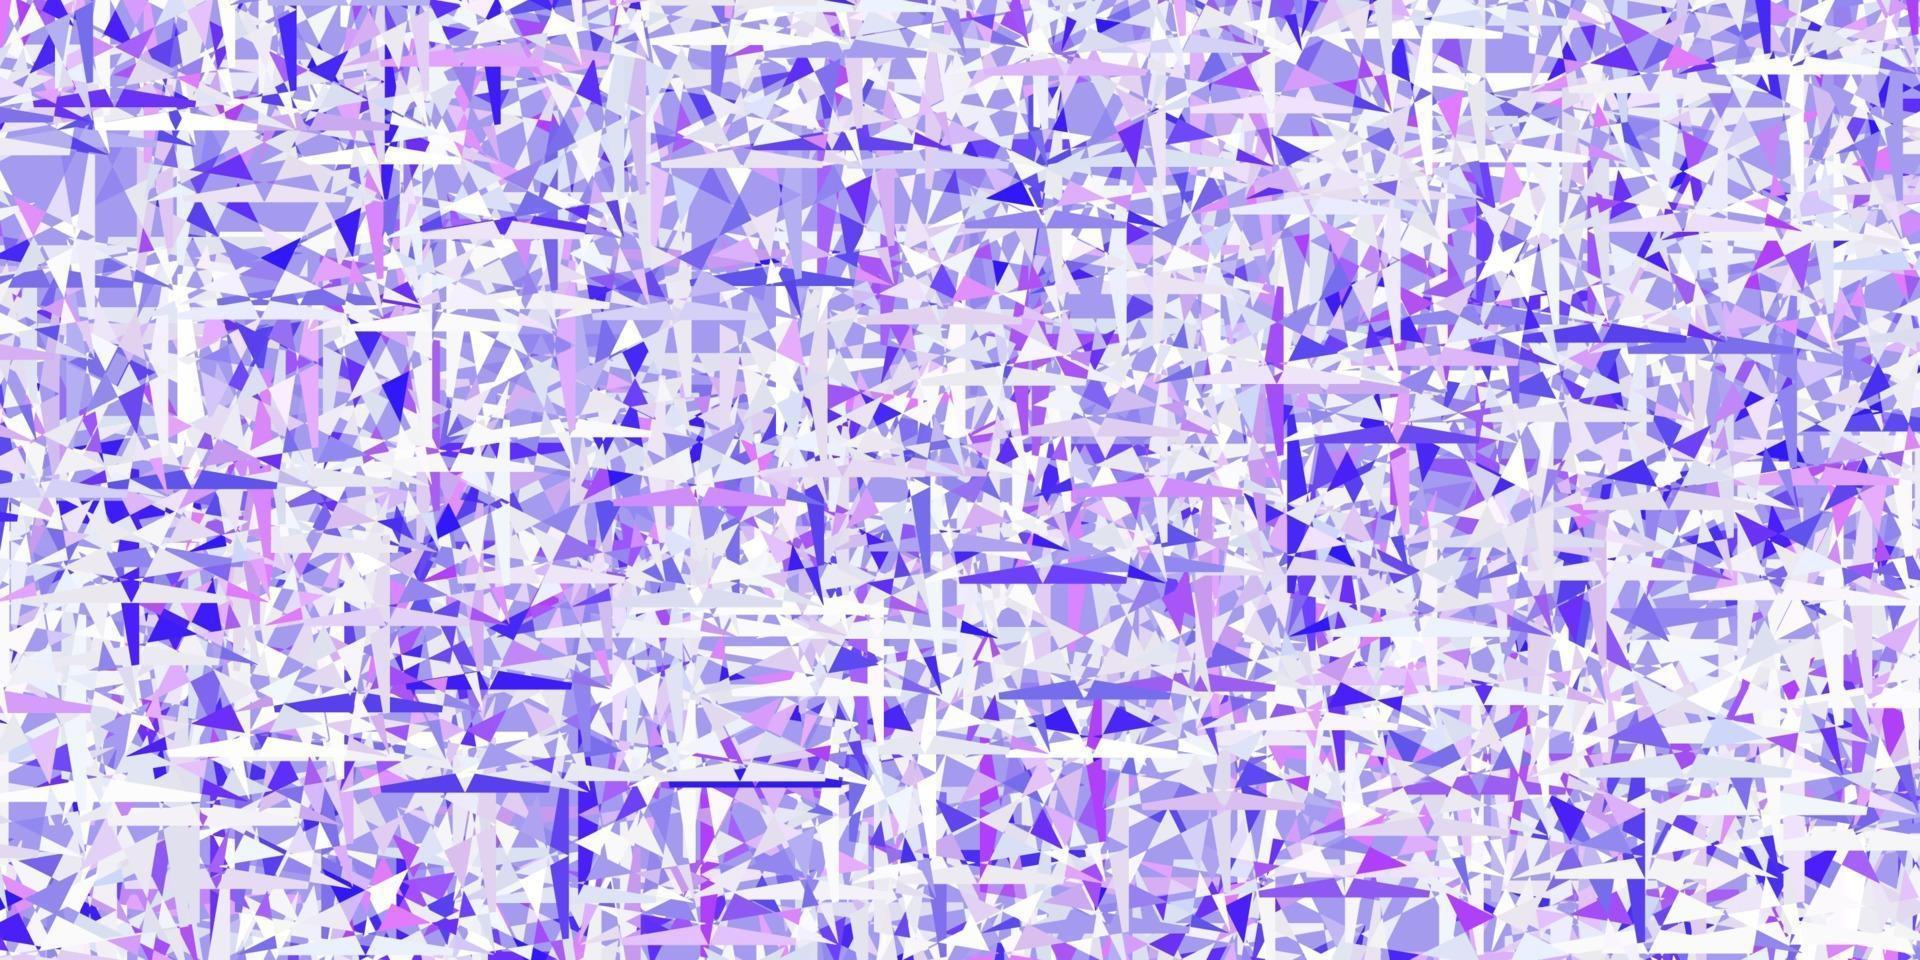 padrão de vetor roxo claro com estilo poligonal.